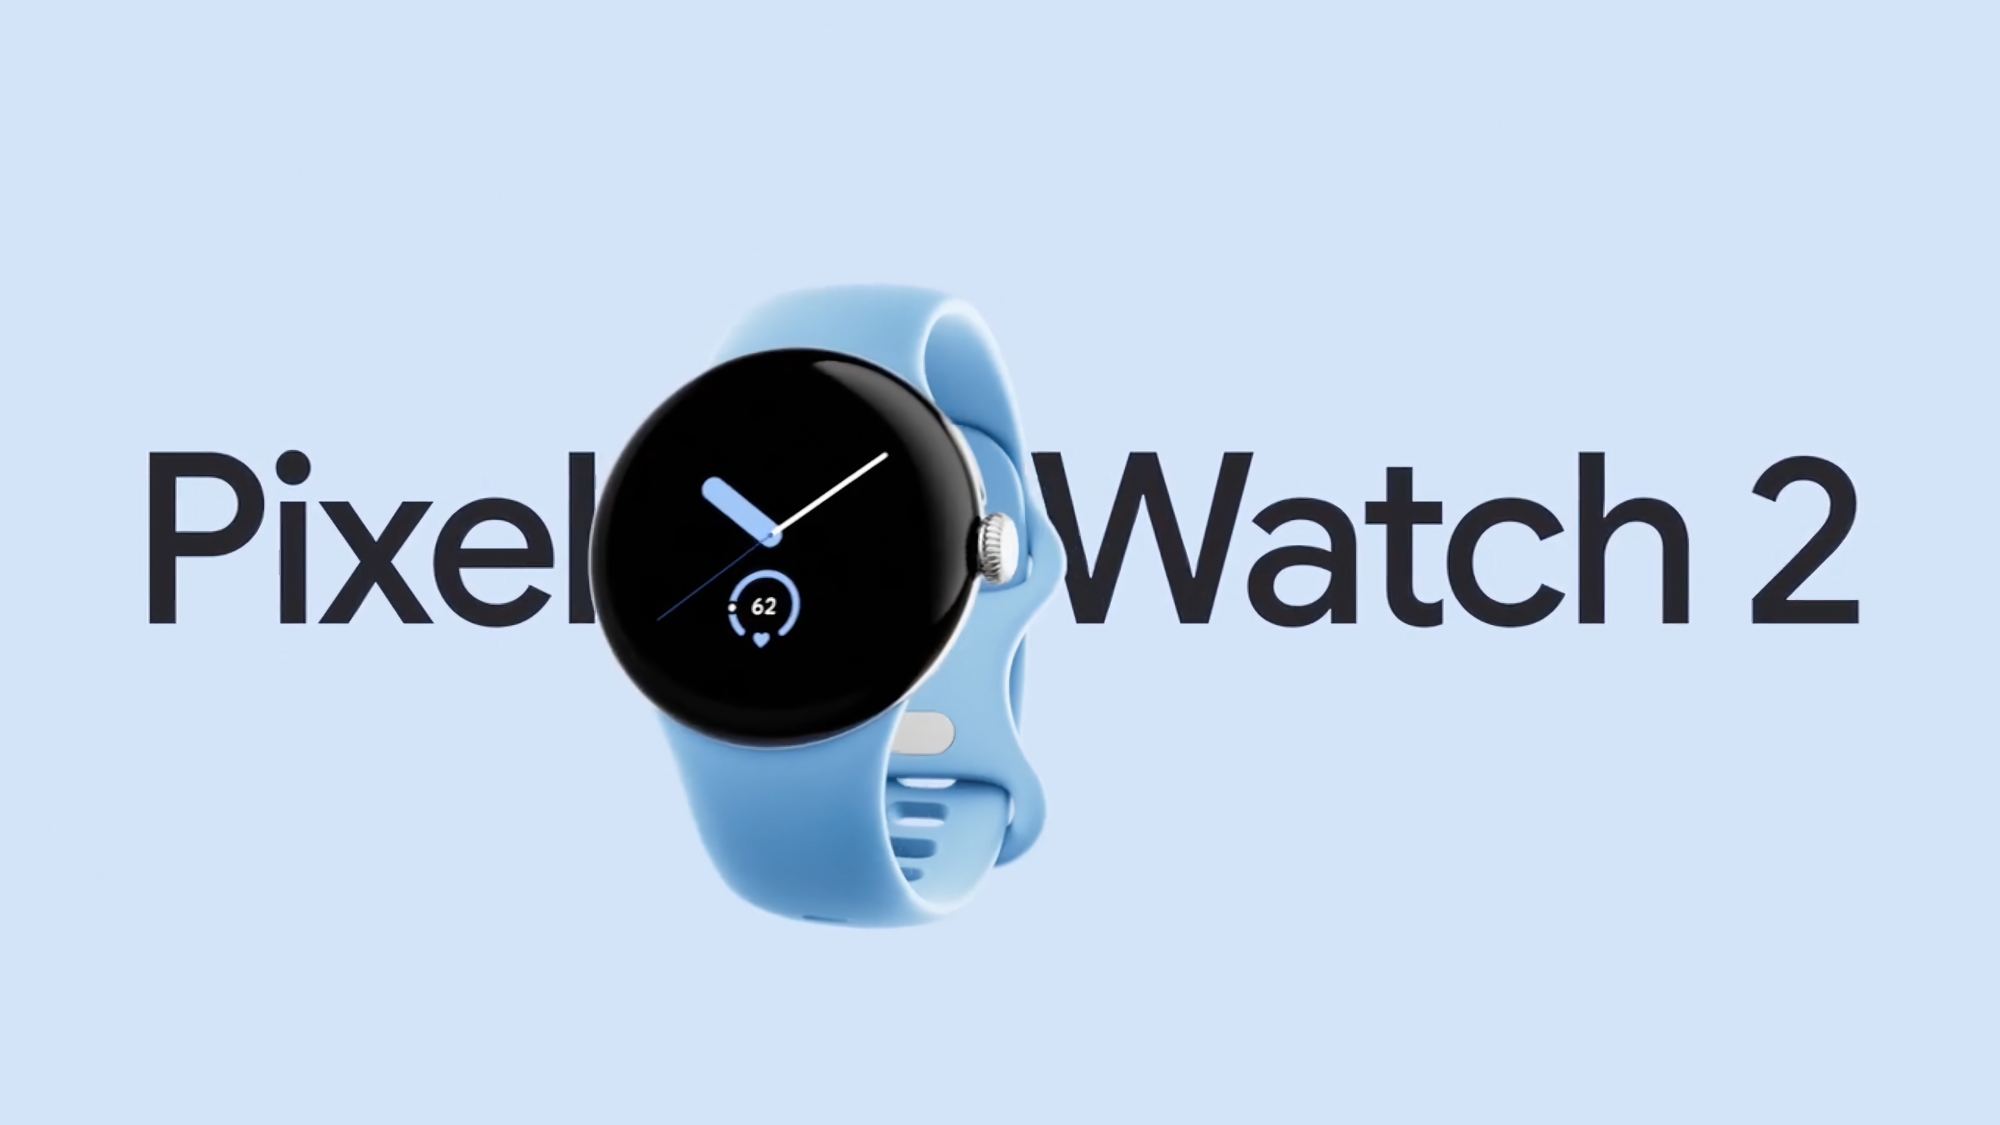 Kroppstemperatursensor, uppdaterad pulsmätare och nya armband: Google Pixel Watch 2-annonsen har dykt upp online